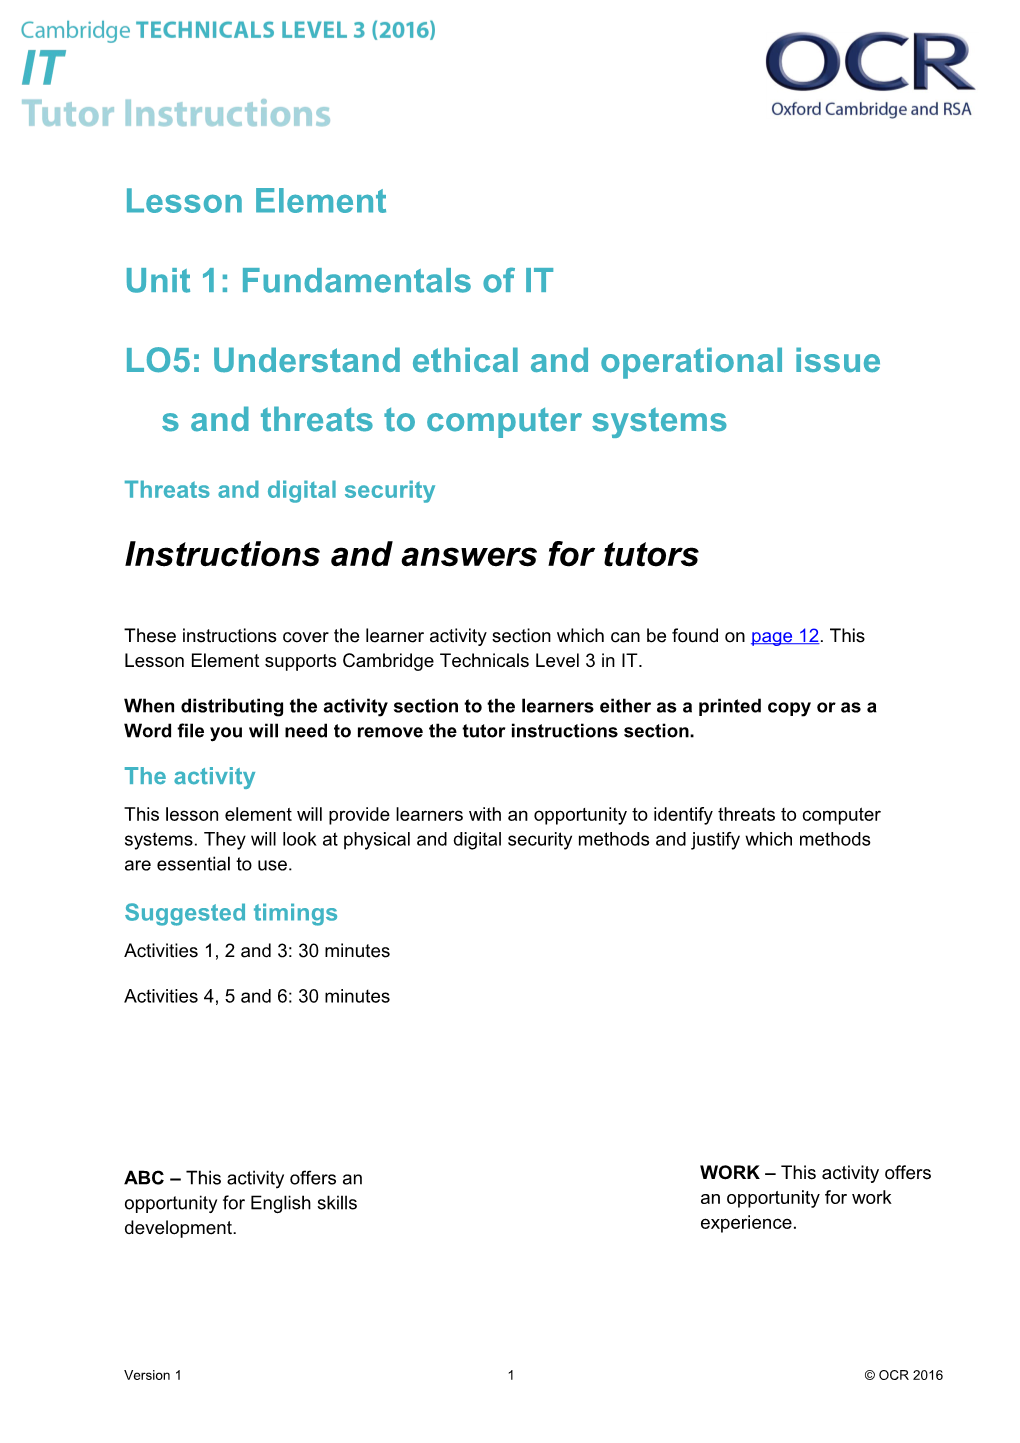 Cambridge Technicals Level 3 in IT U01 Lesson Element 2